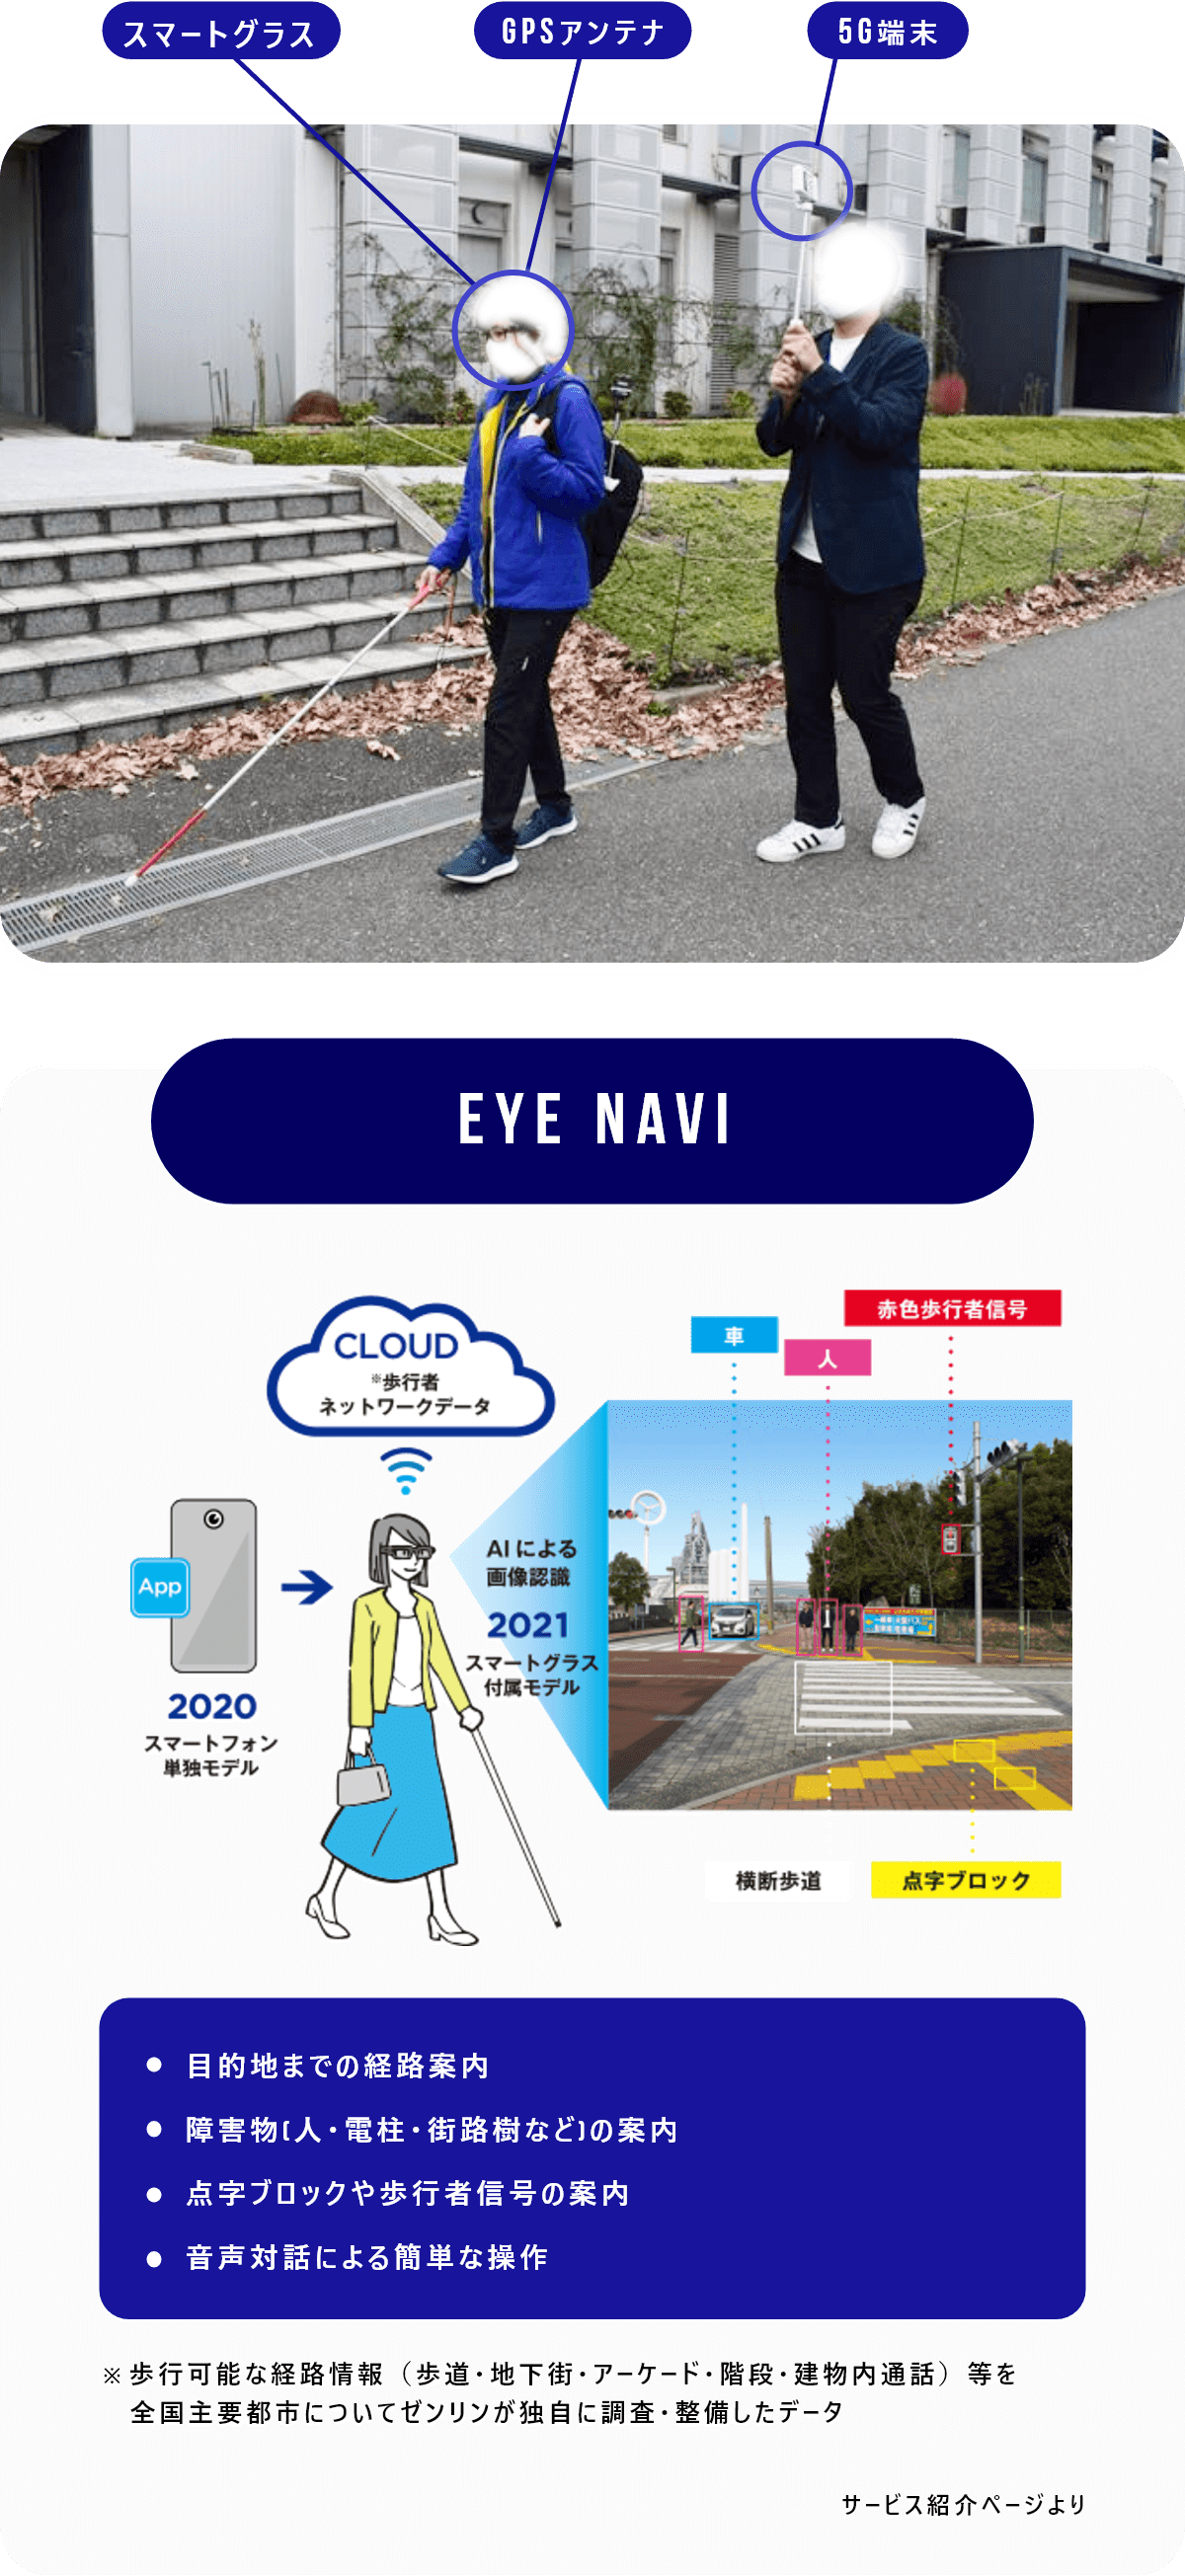 図：視覚障がい者向け道案内システム 目的地までの経路案内障害物[人・電柱・街路樹など]の案内点字ブロックや歩行者信号の案内音声通話による簡単な操作